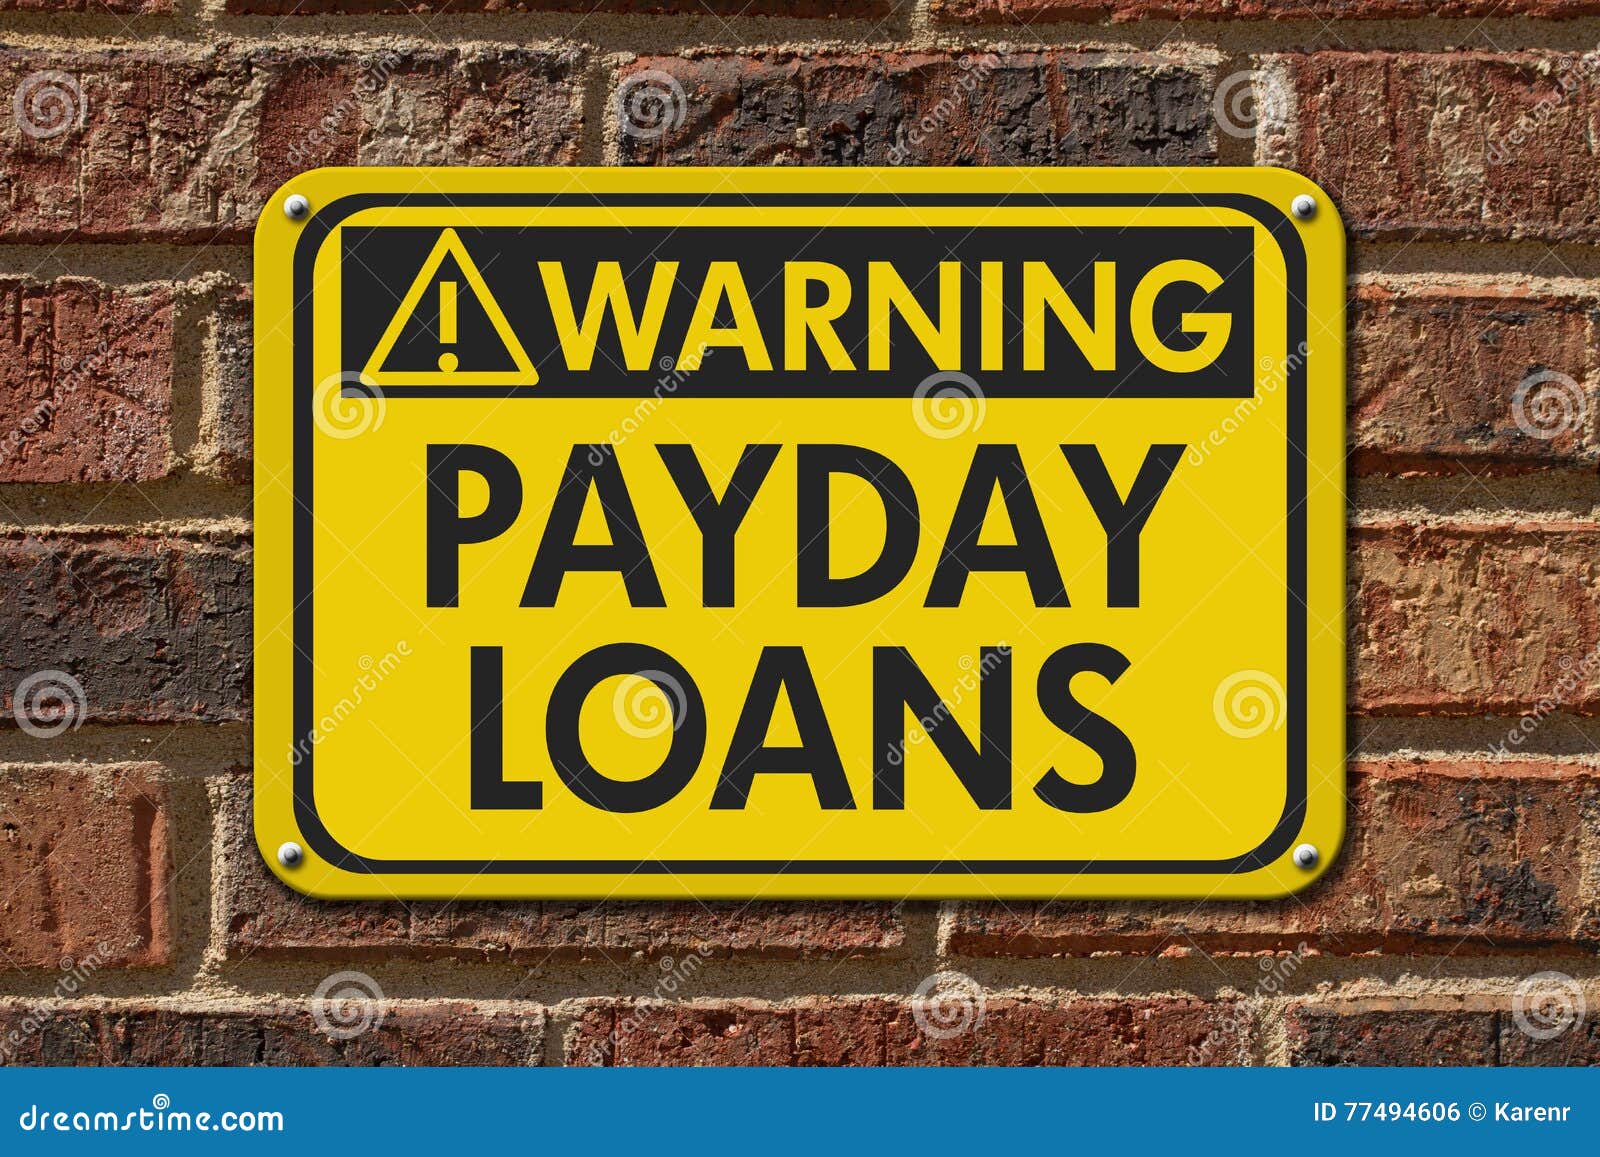 payday loans warning sign